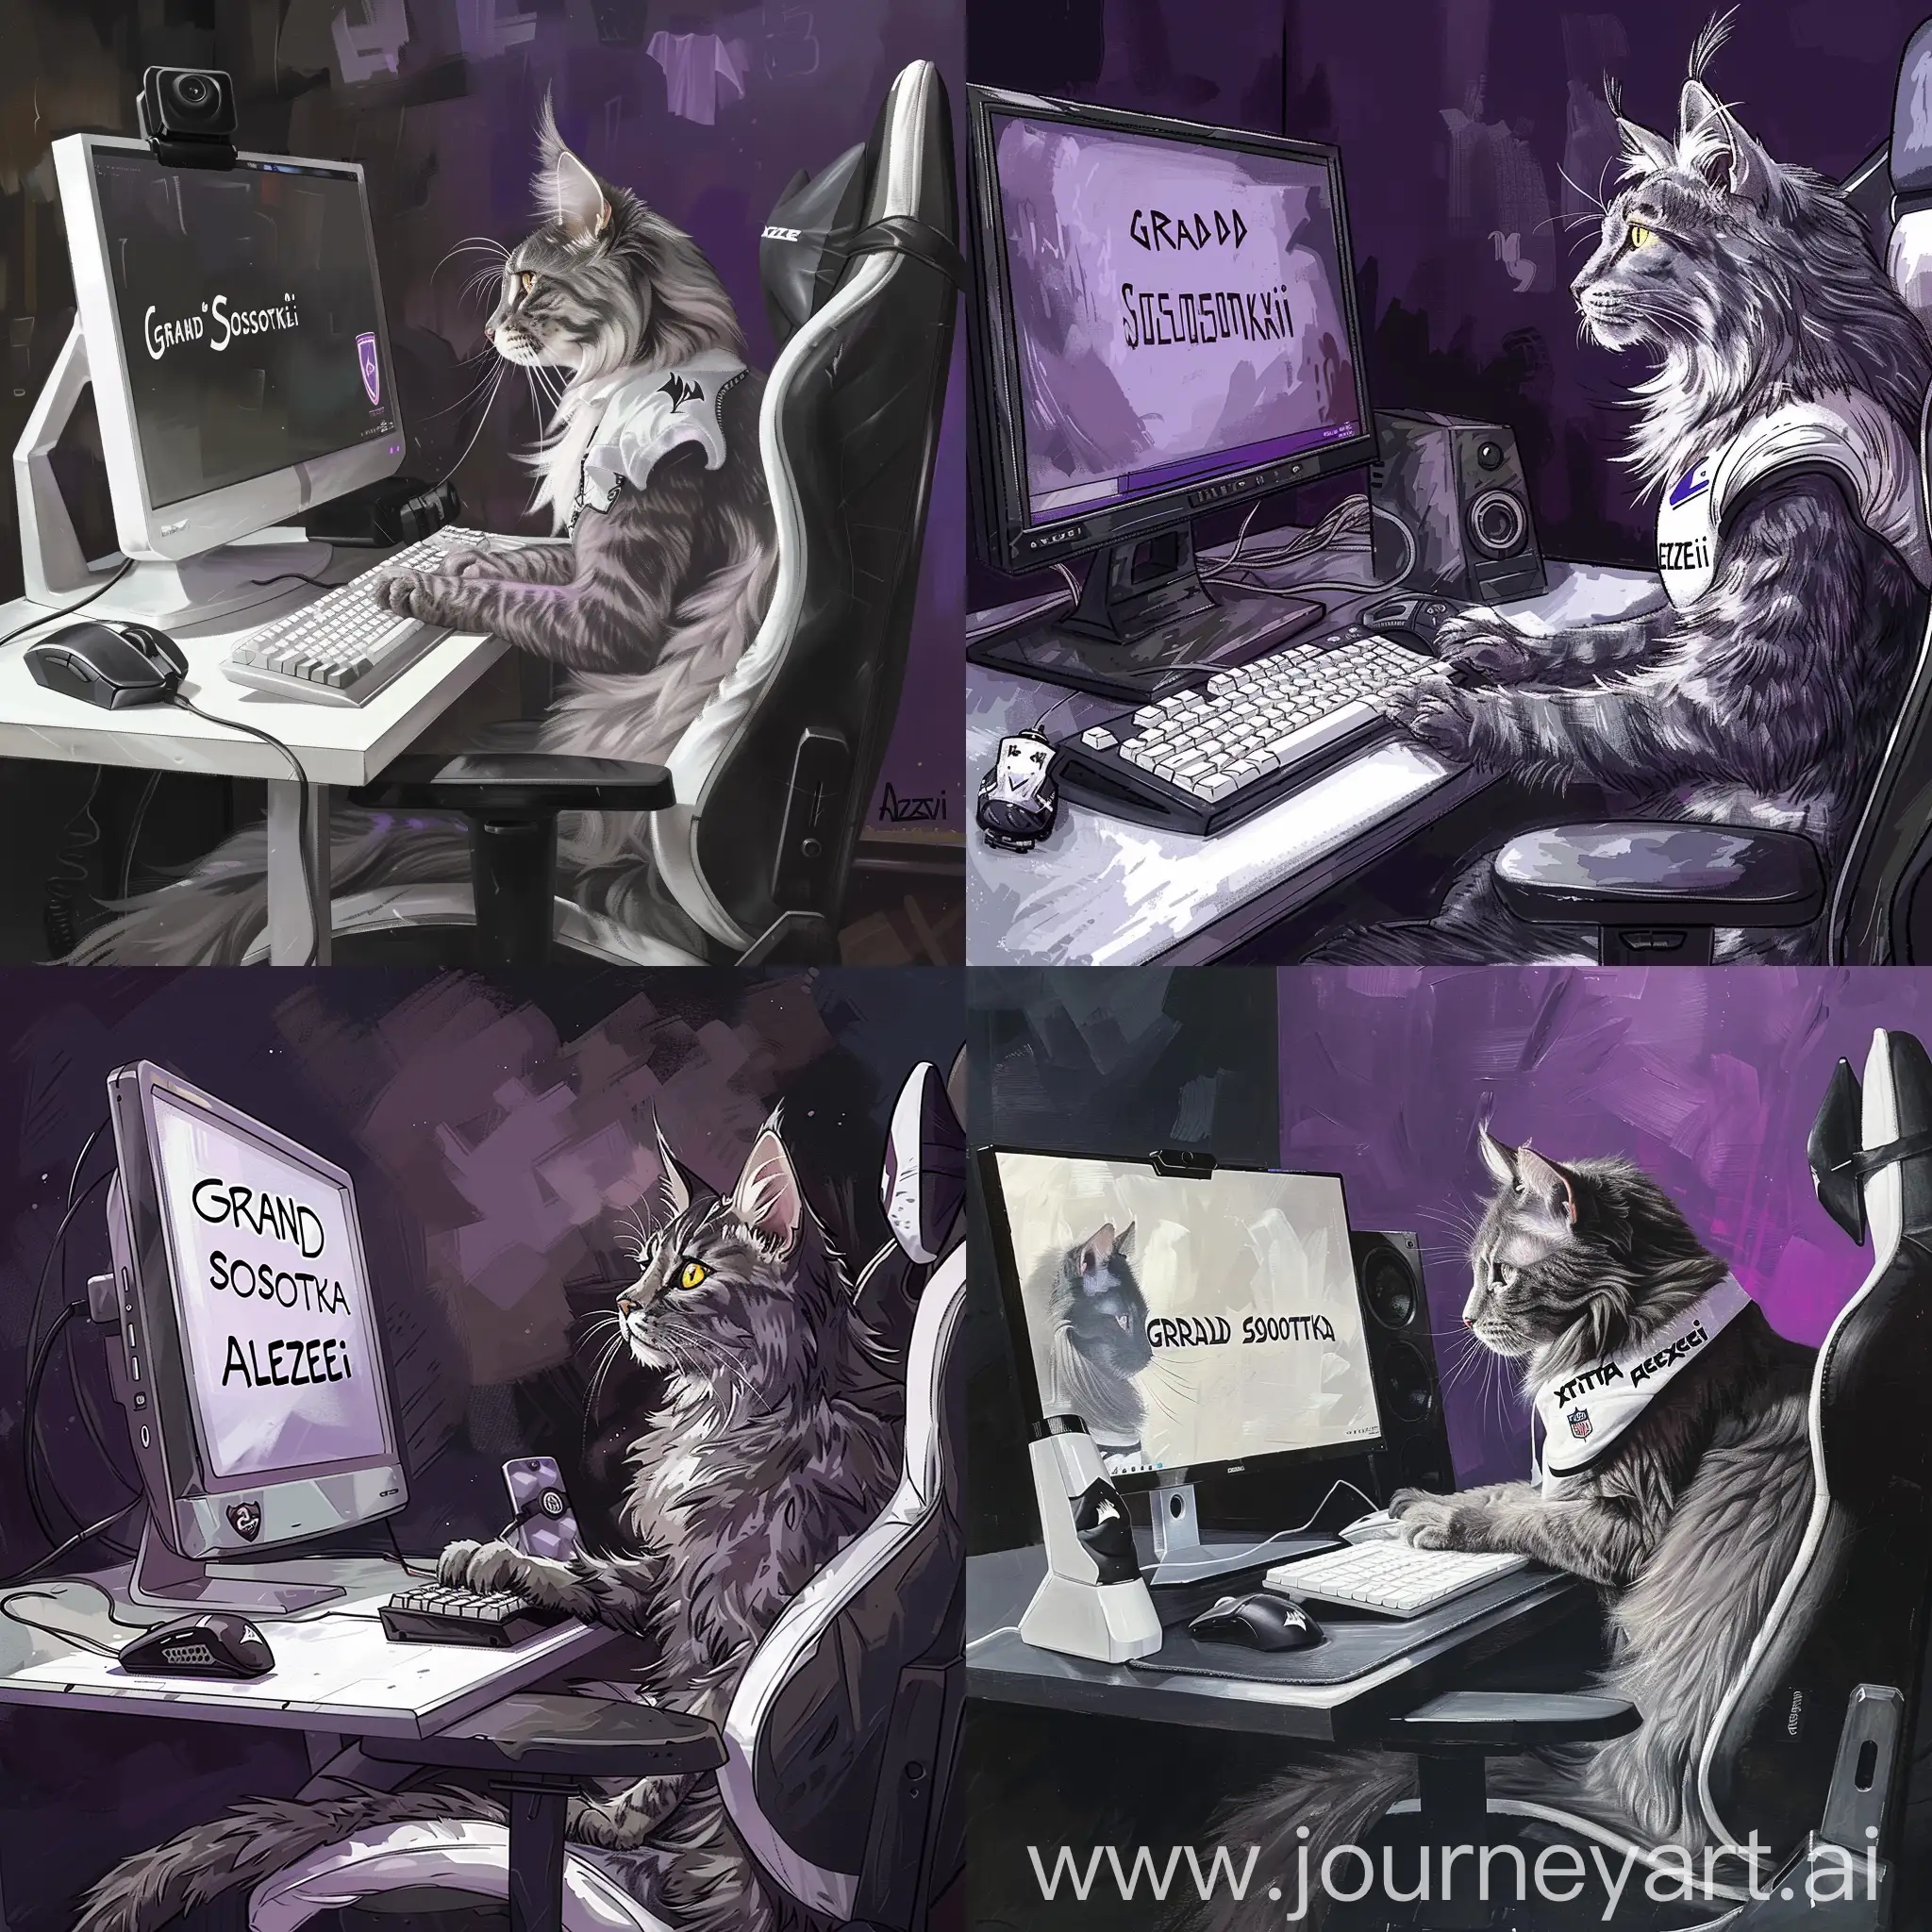 серый кот породы мейн-кун сидит на компьютерном стуле и смотрит в монитор, на котором написана надпись"GRAND SOSOTKA" , на столе стоит белая клавиатура и черная игровая мышь. Черно-фиолетовая комната изображена на фоне кошки. Кота зовут АЛЕКСЕЙ, на его стуле написана надпись"ExtaZoV", а сам кот одет в белую футболку trasher с надписью"АЛЕКСЕЙ". 